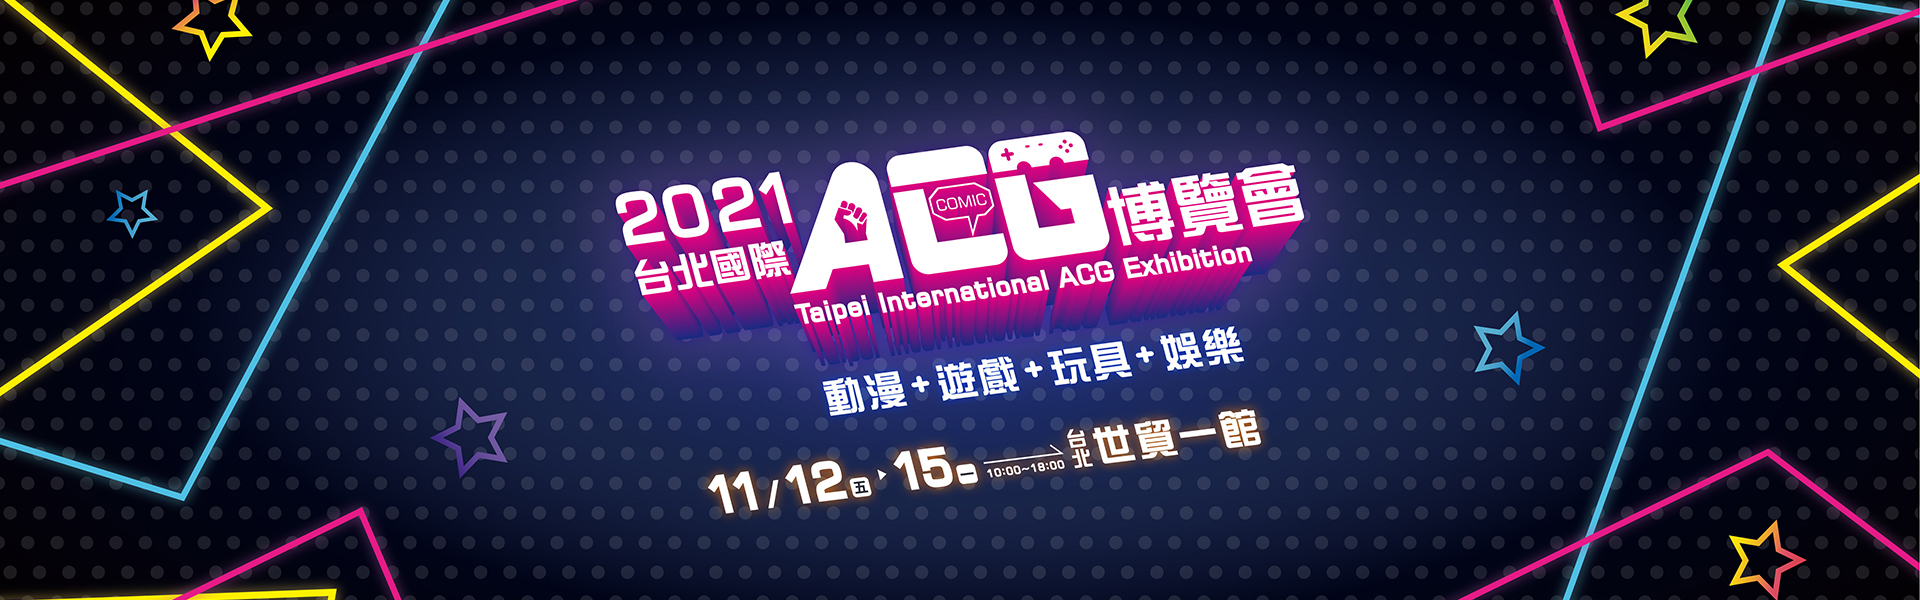 台北國際ACG博覽會-最新訊息